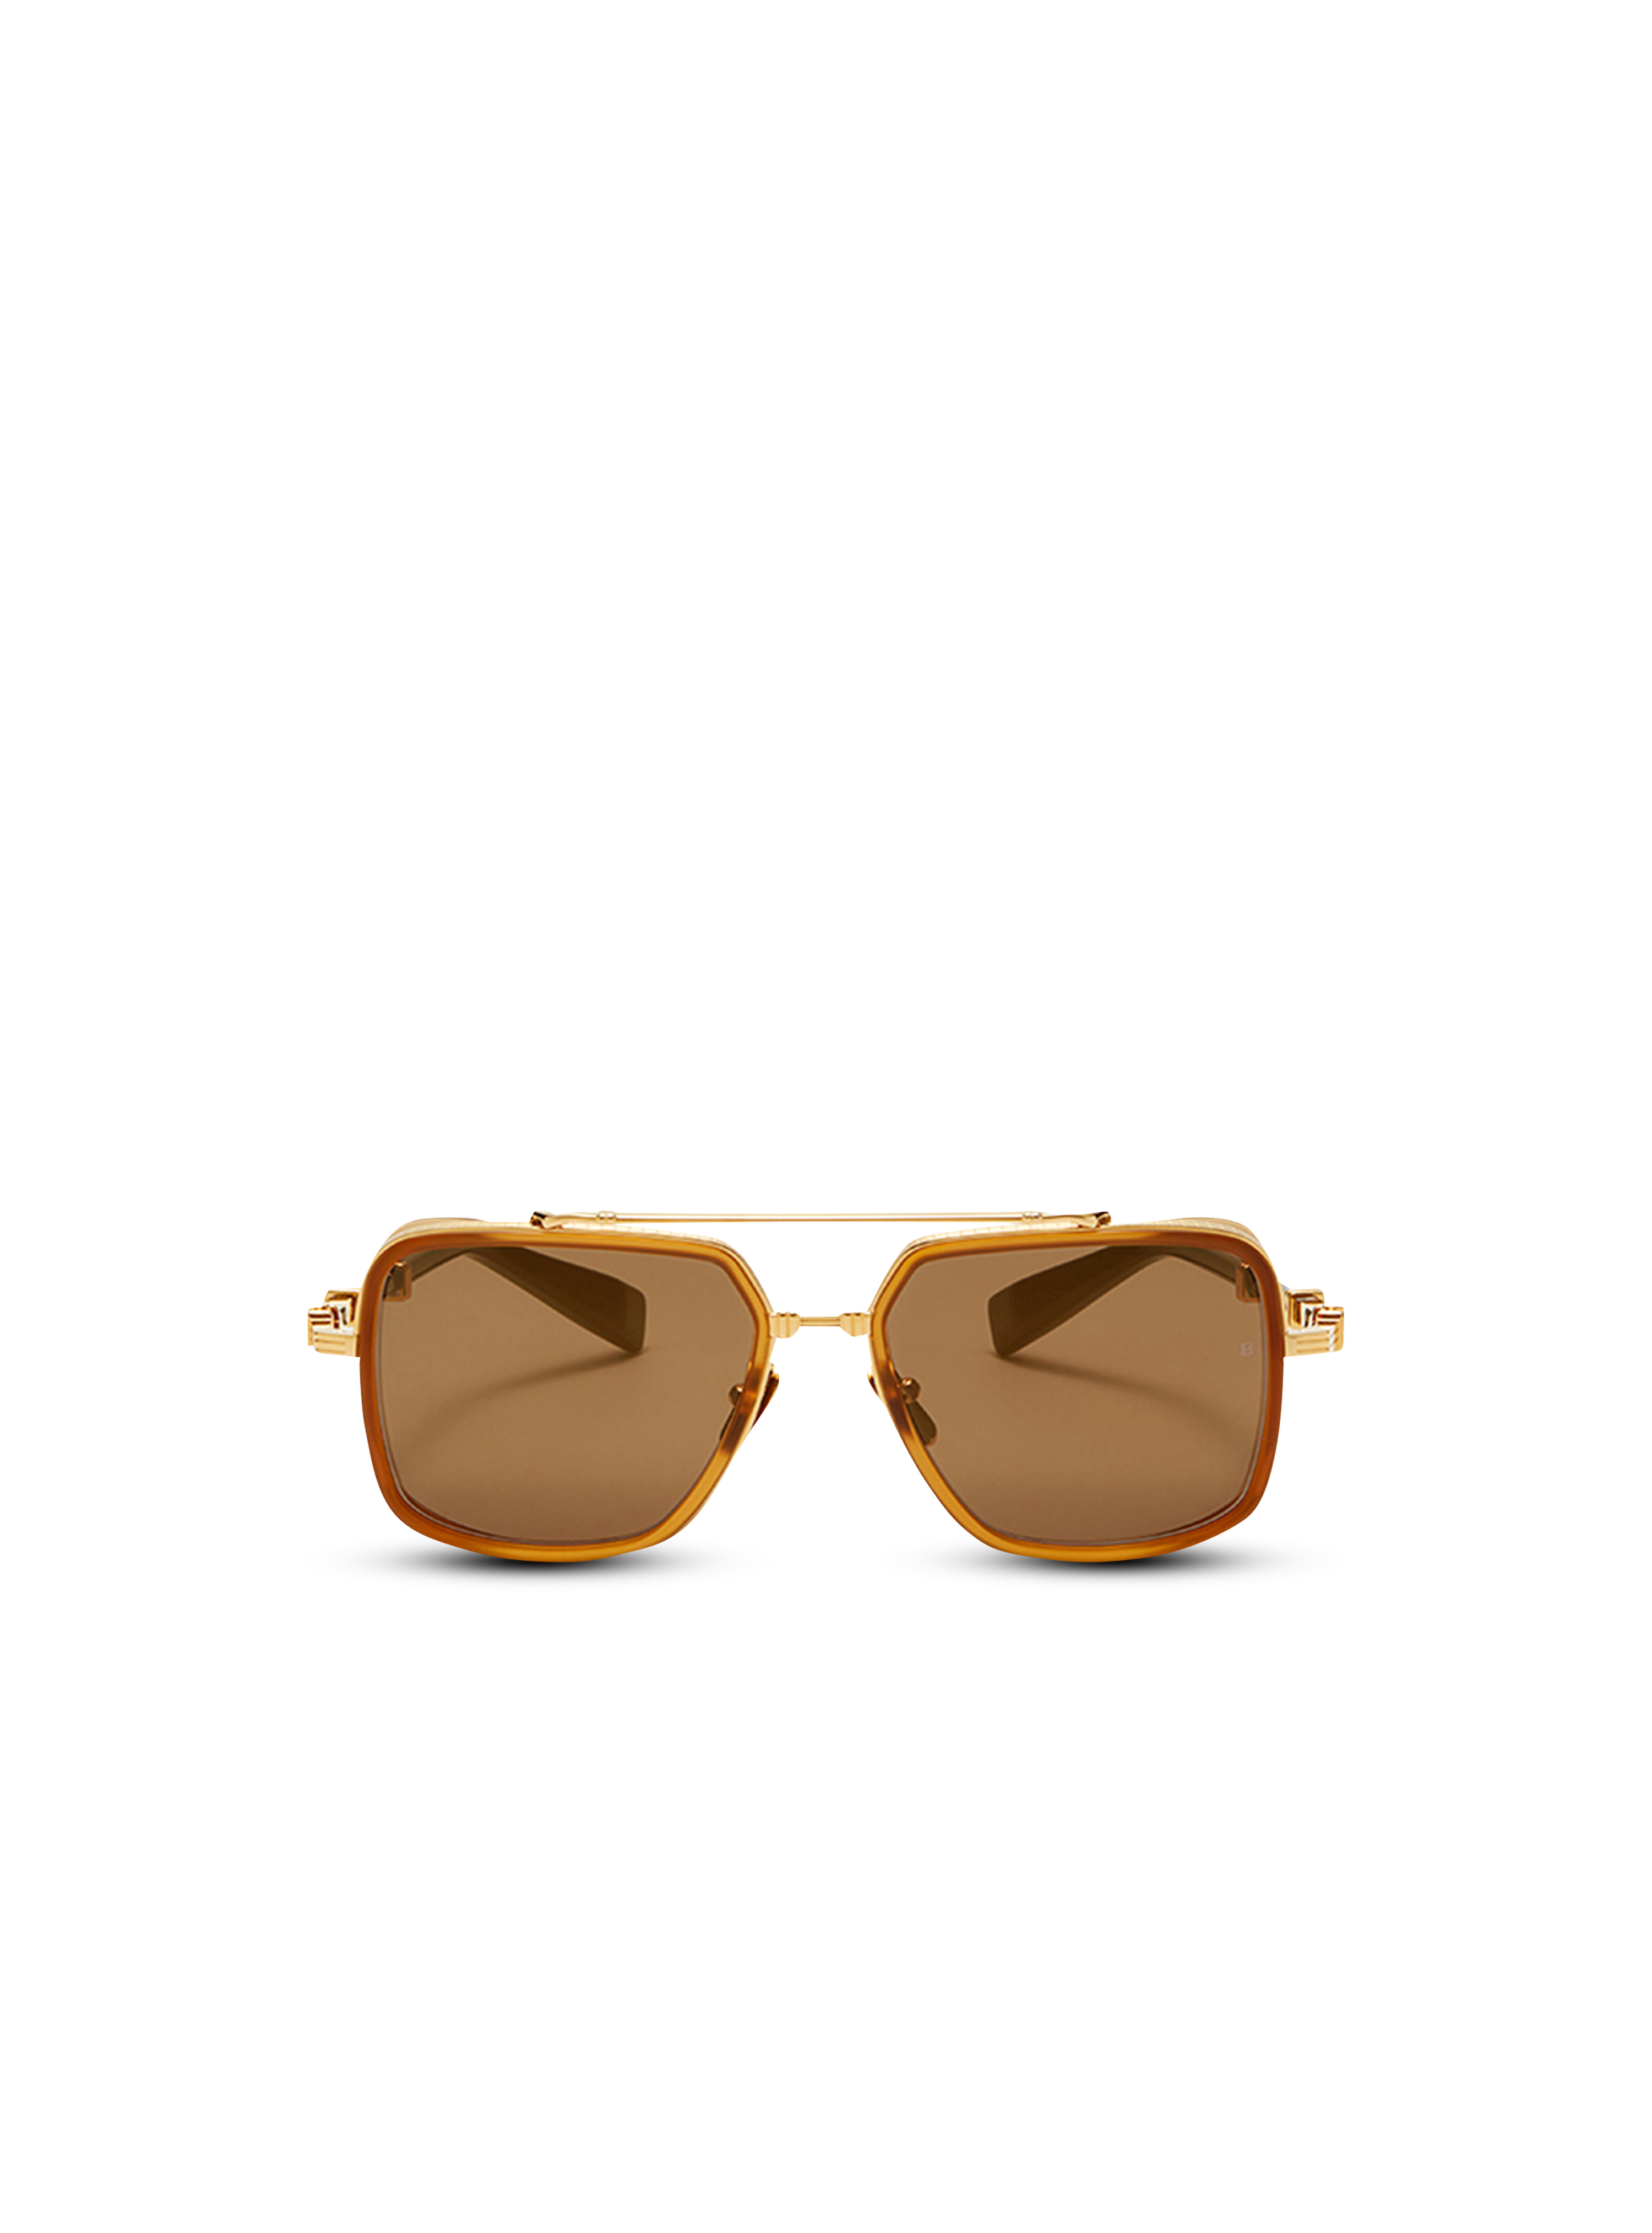 Officier sunglasses, gold